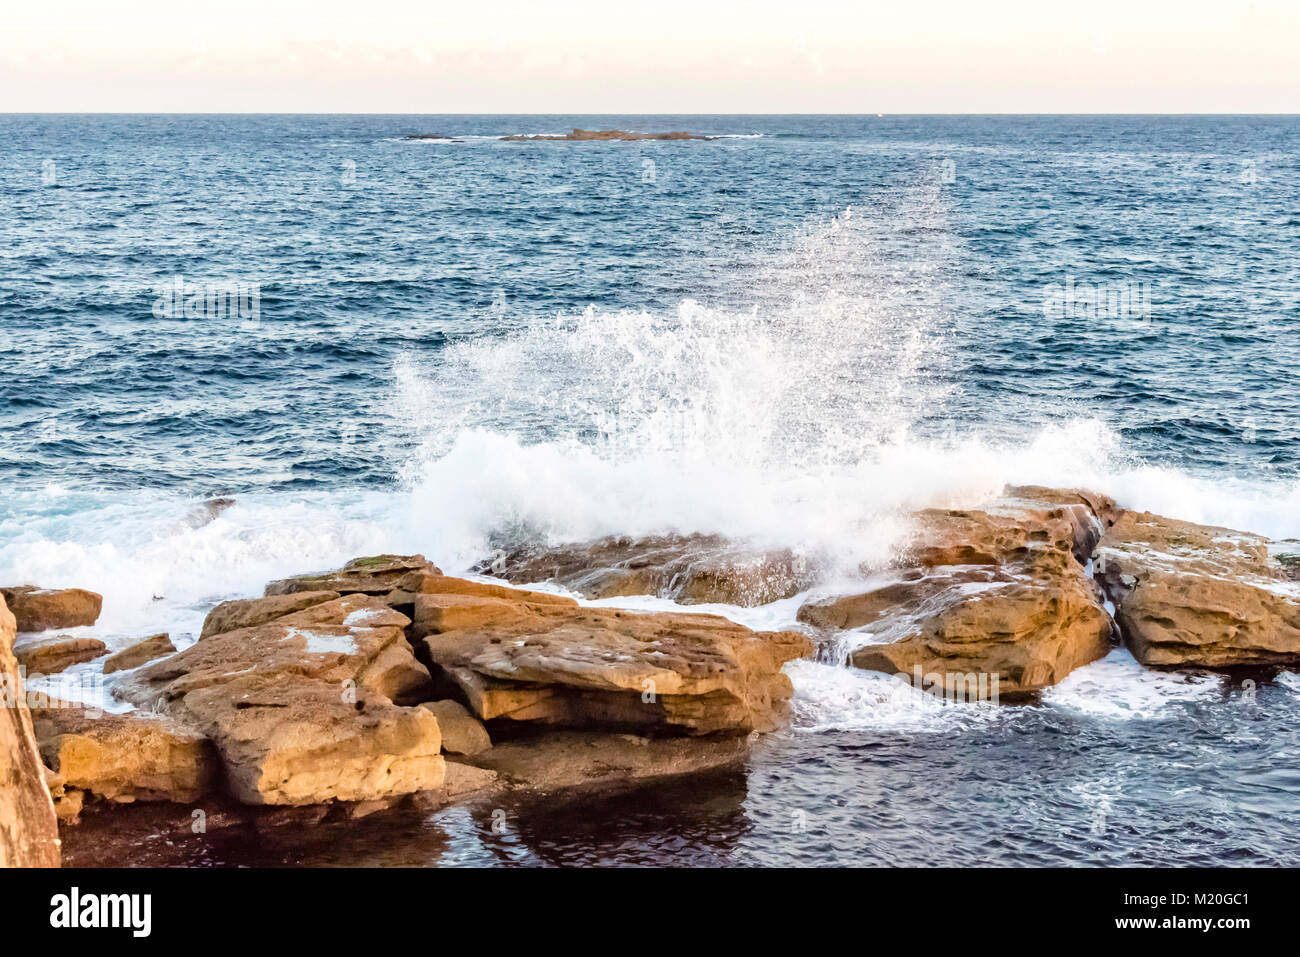 Vista panoramica dell'Oceano Pacifico blu e la costa Australiana con onde che si infrangono sulle rocce, diurno. Acqua di mare gli schizzi, Coogee Beach, Sydney, Australia. Foto Stock